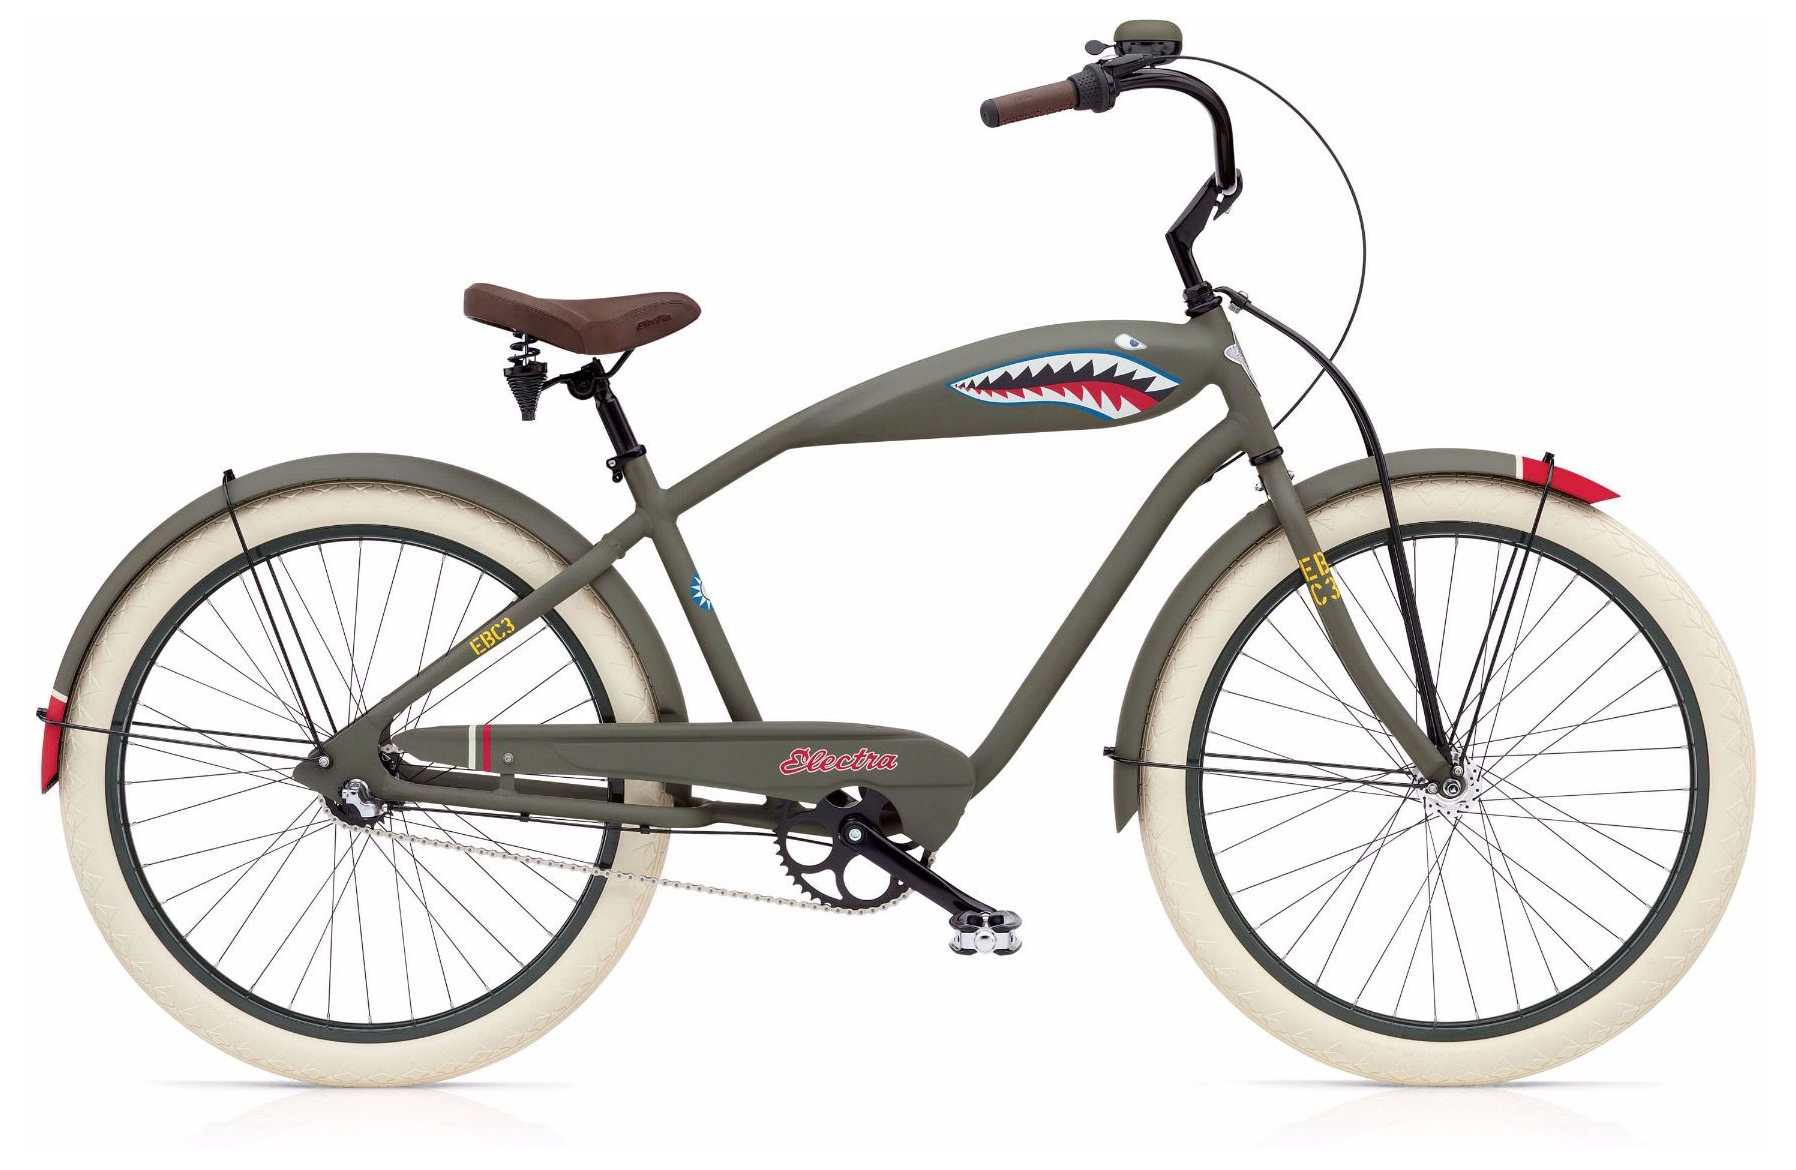  Отзывы о Велосипеде круизере Electra Tiger Shark 3i 2019